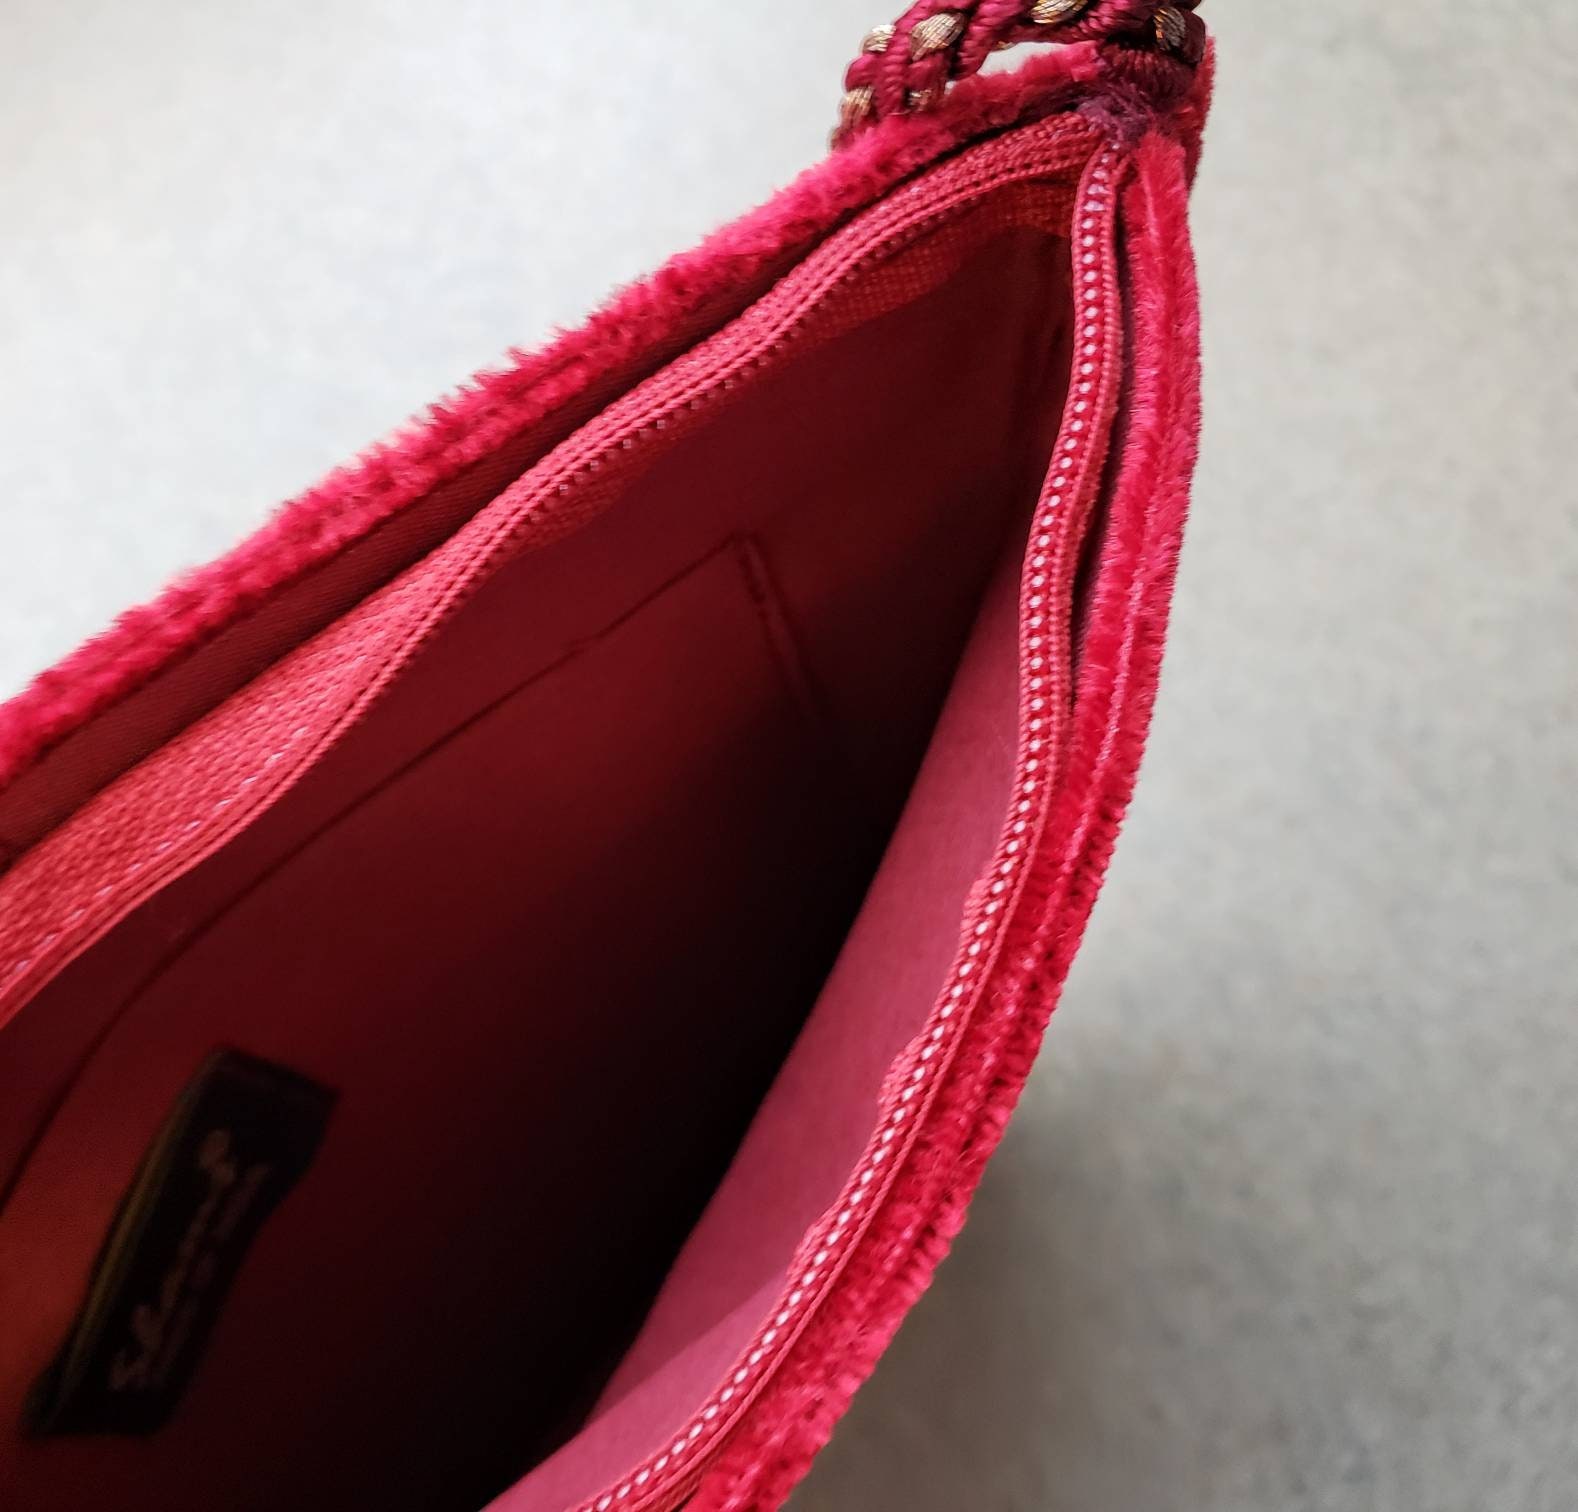 Slim Crossbody Bag Hand Embroidered Red Velvet Zardozi Pouch | Etsy